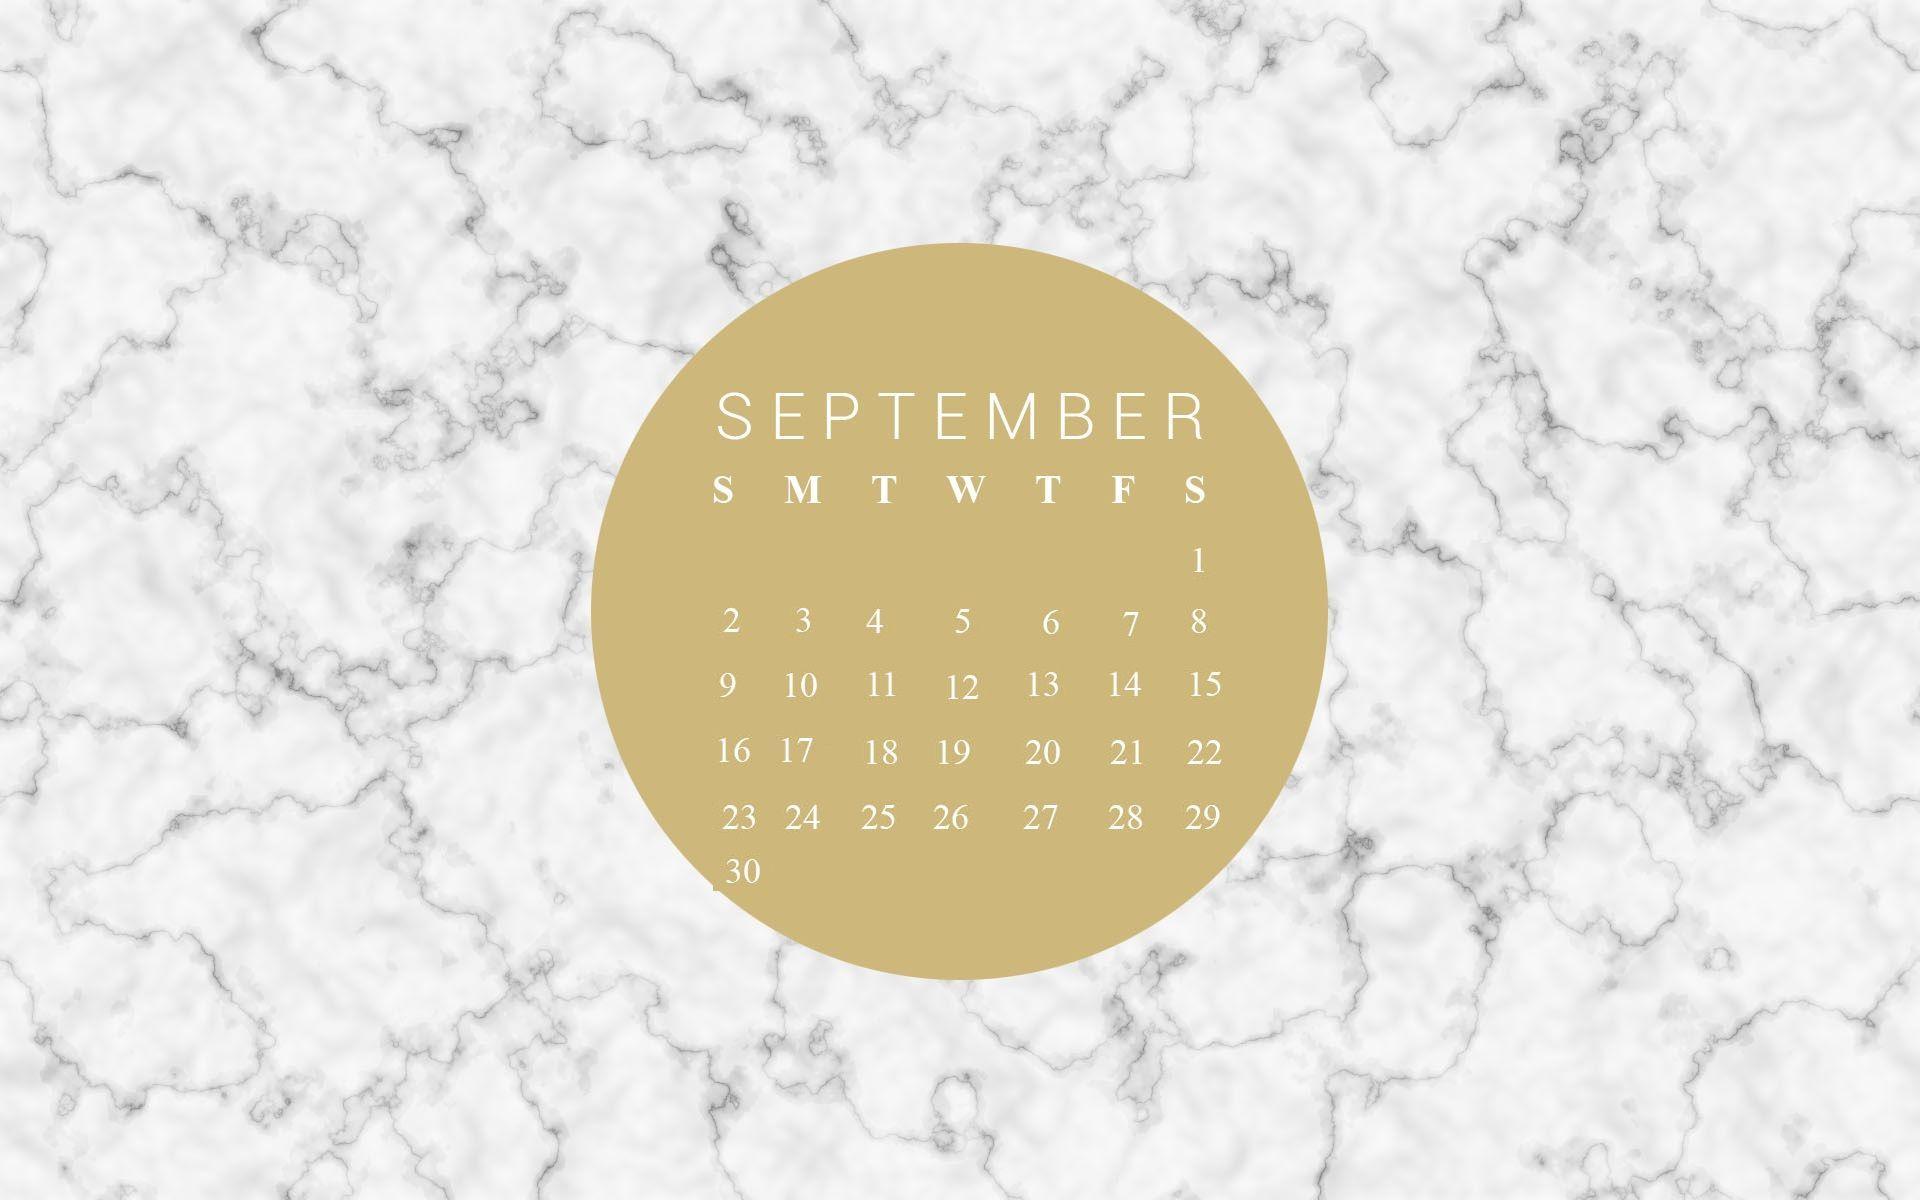 September 2018 Calendar Wallpaper. Calendar 2018